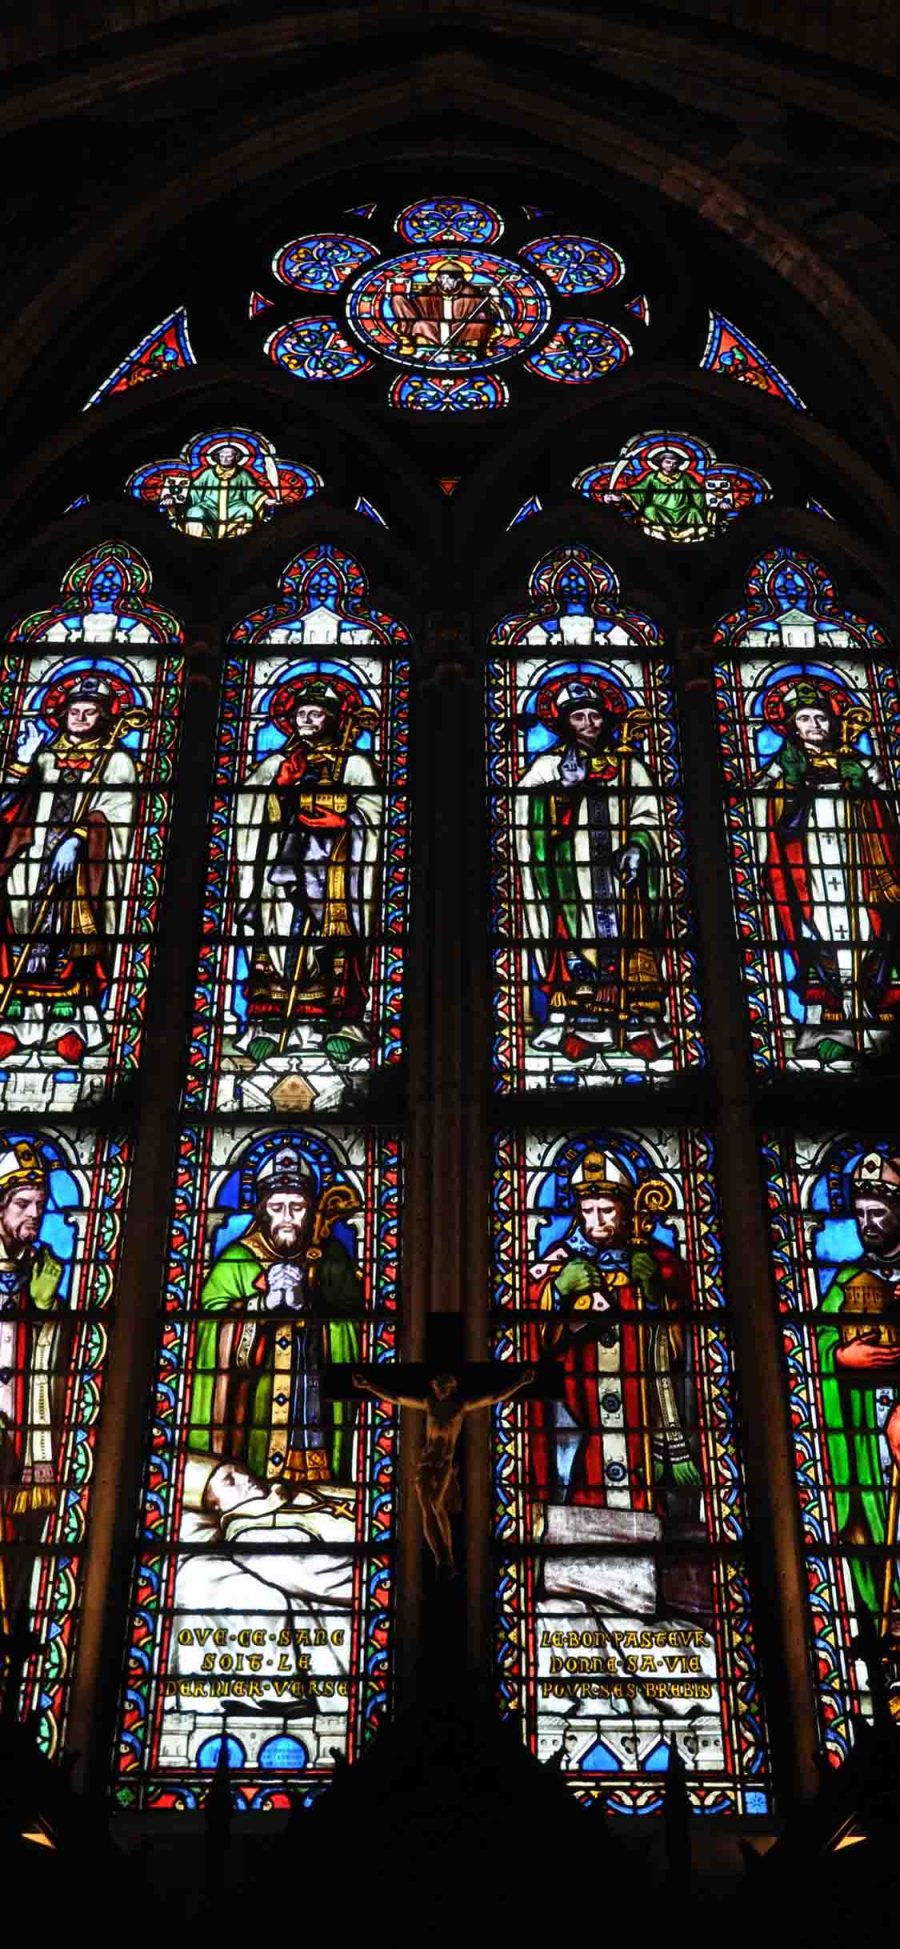 [2436×1125]巴黎圣母院 玫瑰花窗 玻璃 彩绘 法国 宗教 苹果手机壁纸图片